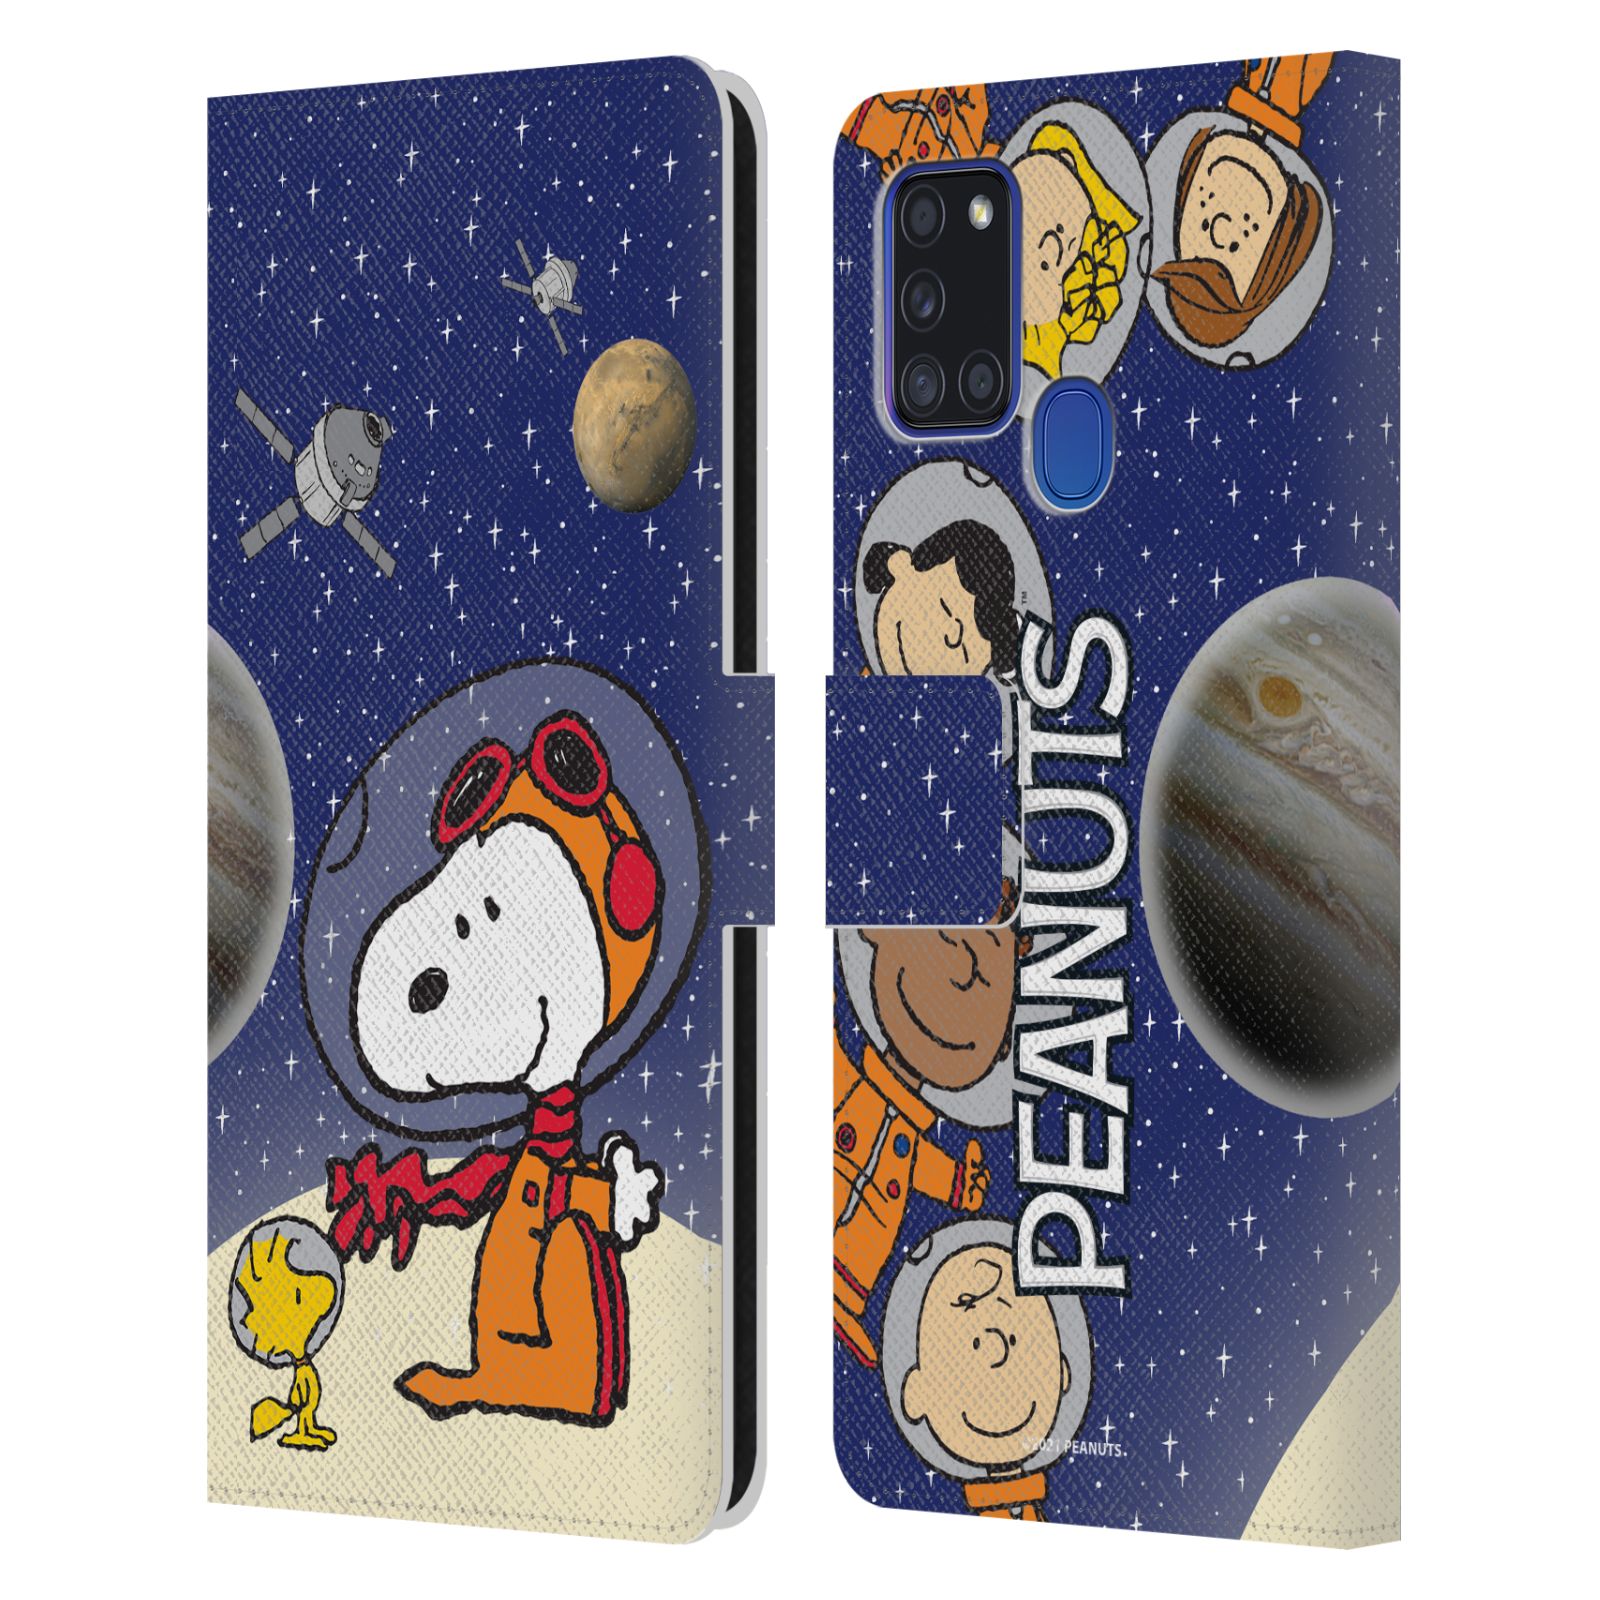 Pouzdro na mobil Samsung Galaxy A21S - HEAD CASE - Peanuts Snoopy ve vesmíru 2